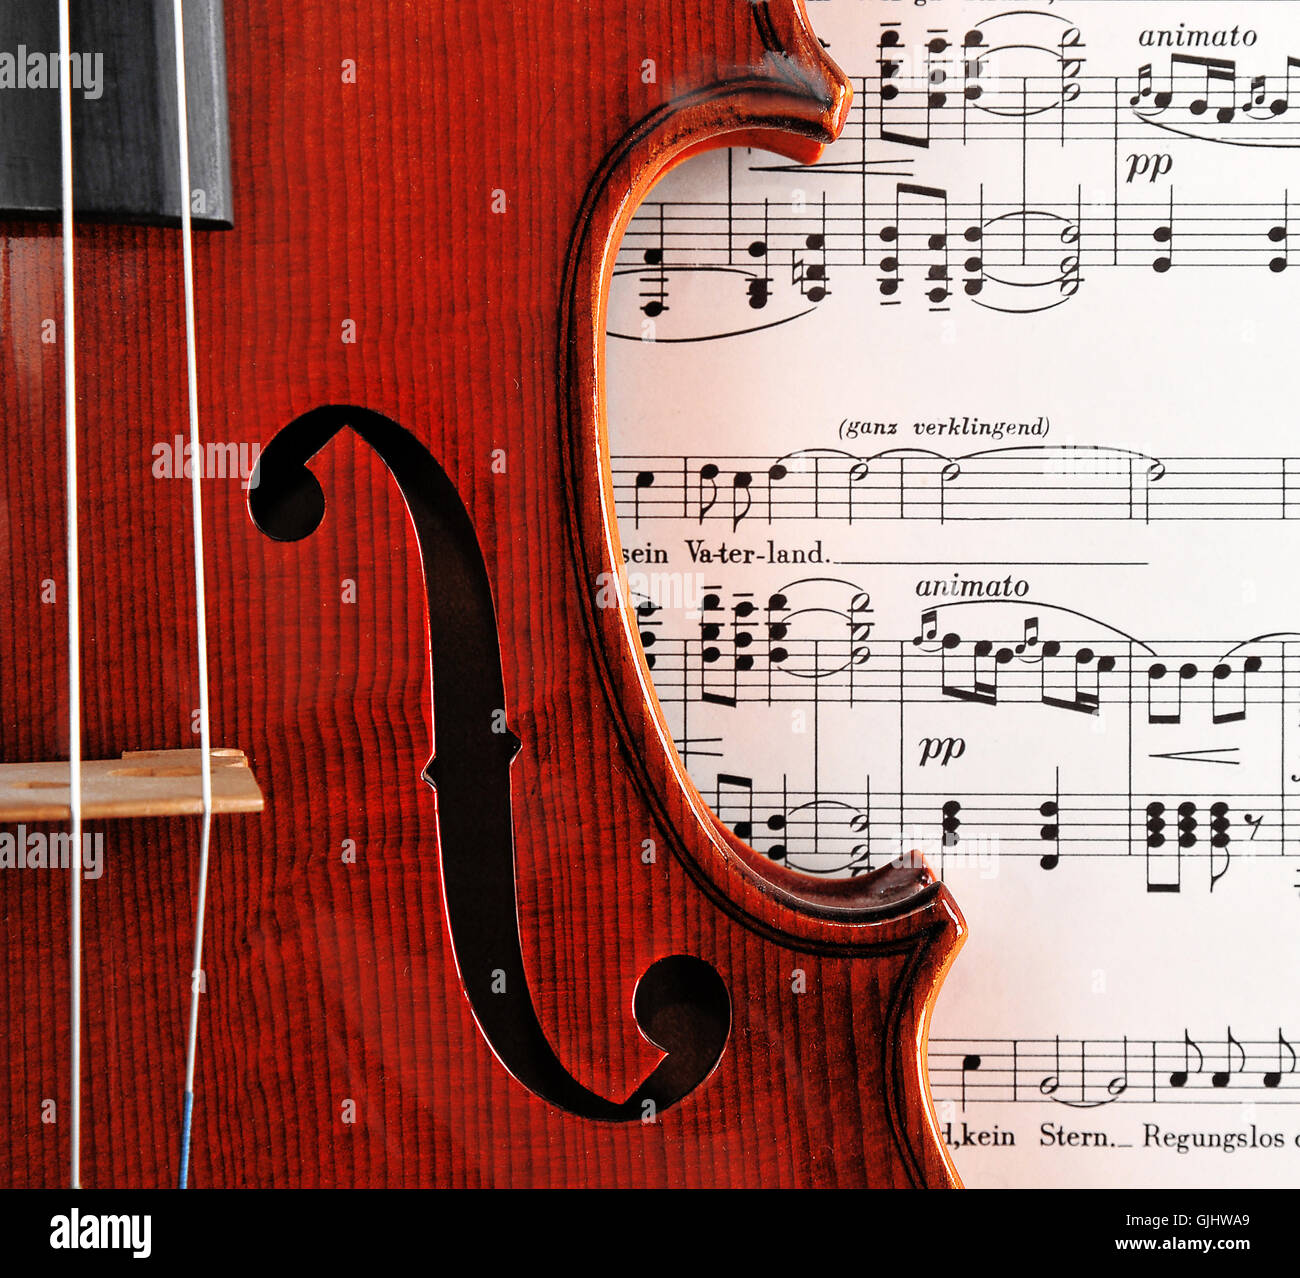 Instrument de musique musique romantisme Photo Stock - Alamy